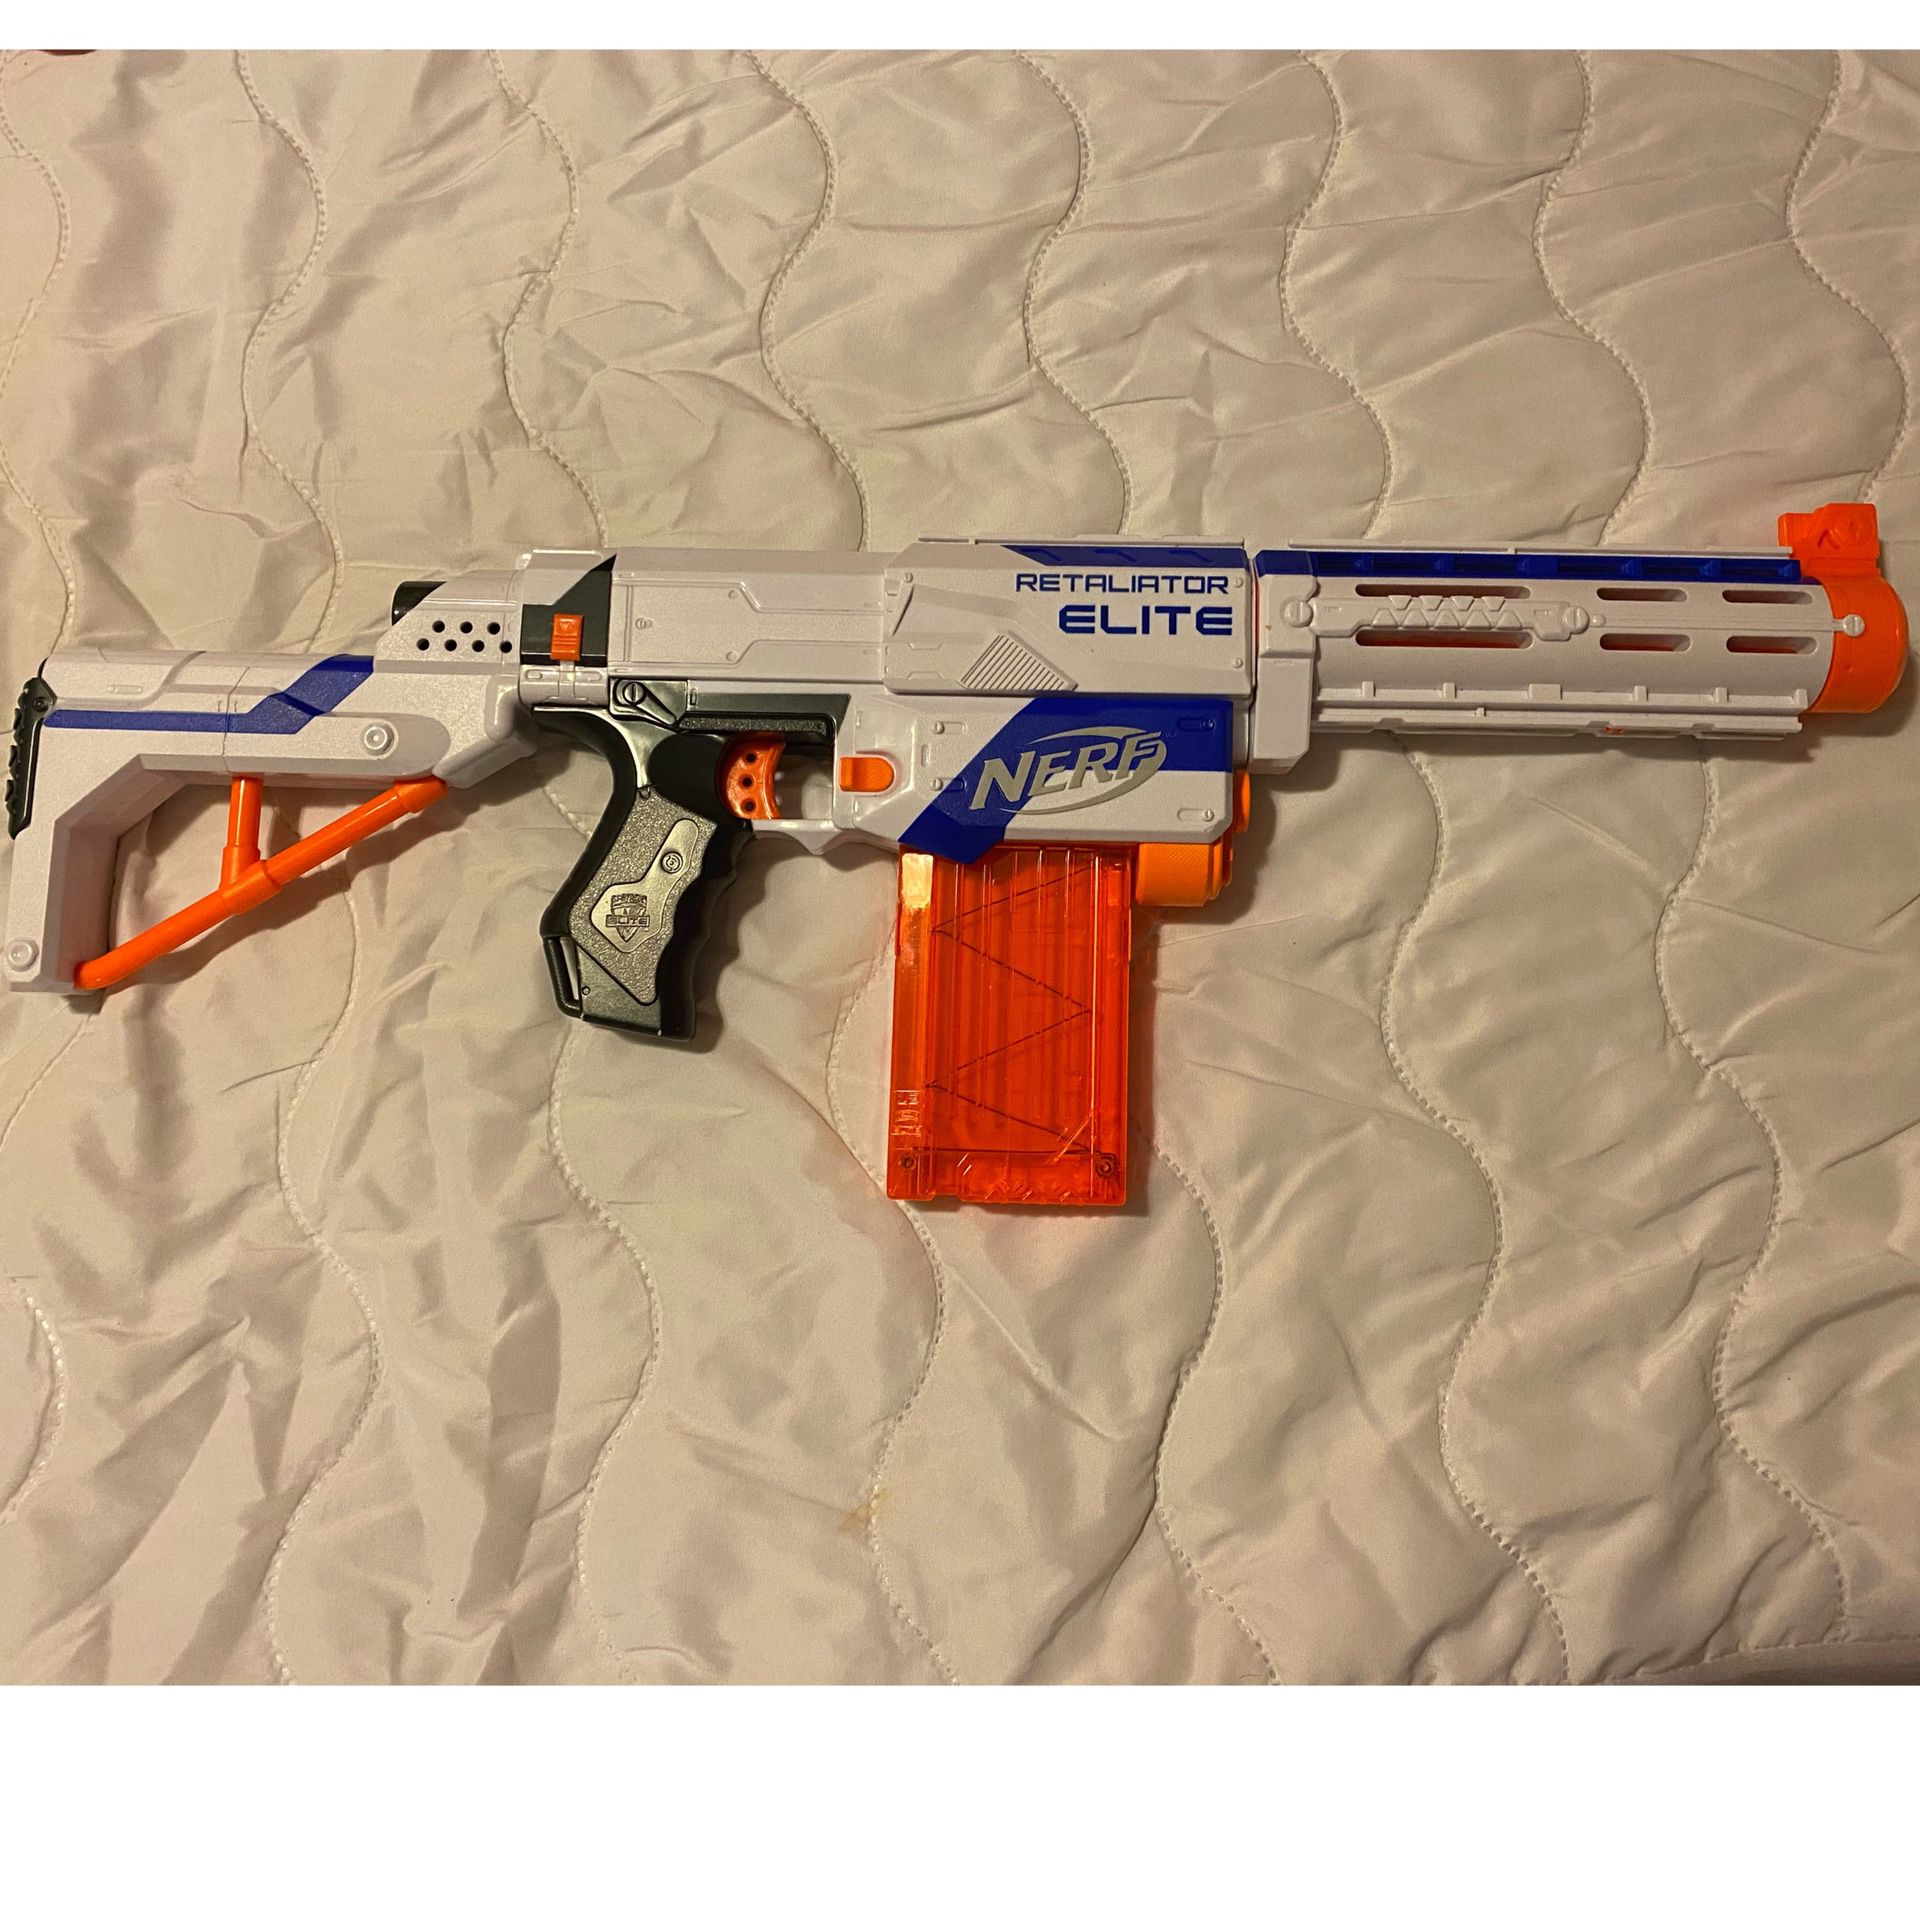 Nerf Retailiator Elite Gun 